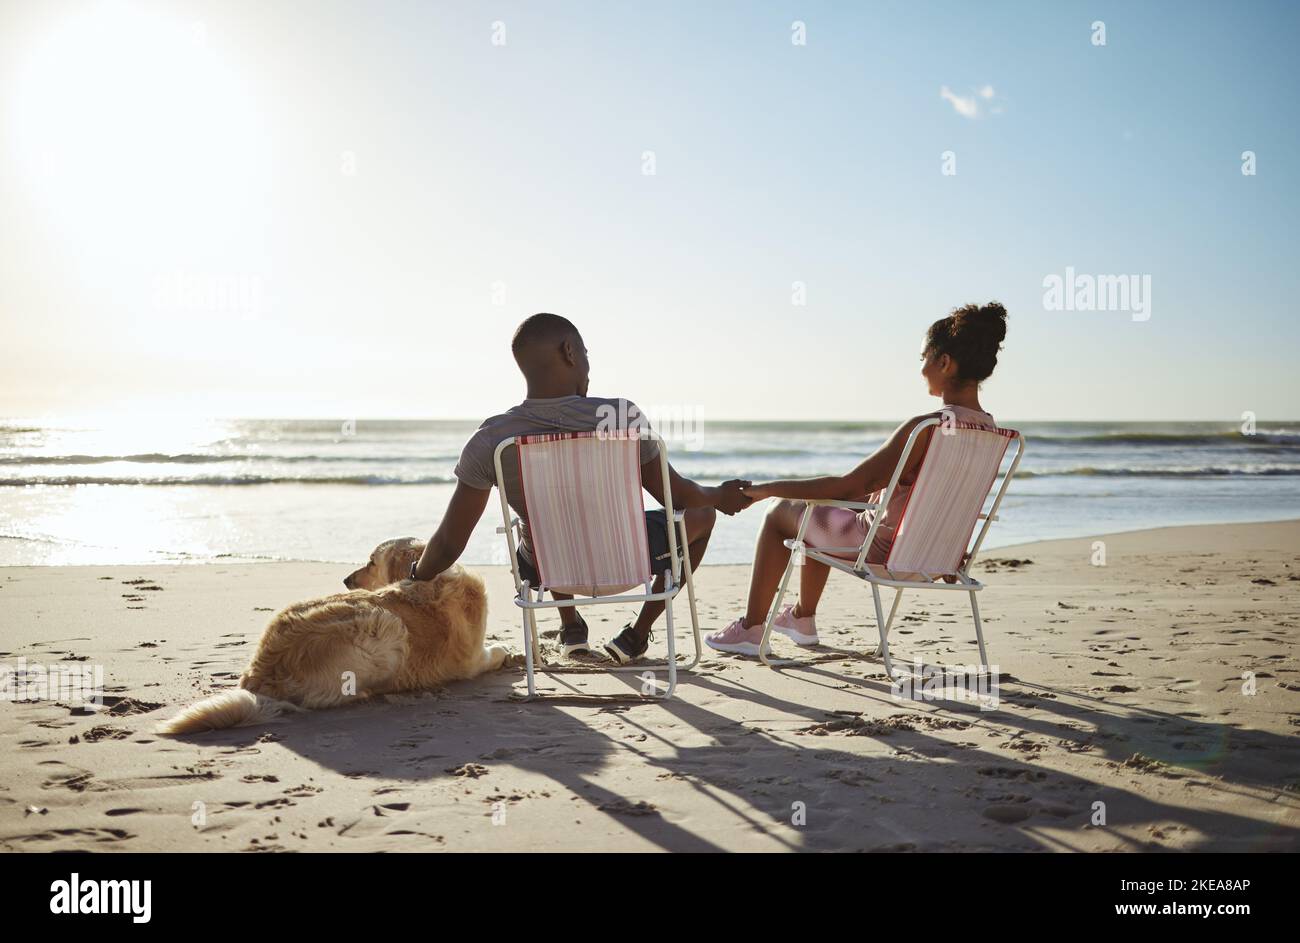 L'amour, le chien ou la famille noire tenant les mains près de la plage, de l'océan ou de la mer pour parler au coucher du soleil, se lier ou se détendre le jour d'été. Famille, voyage ou femme noire Banque D'Images